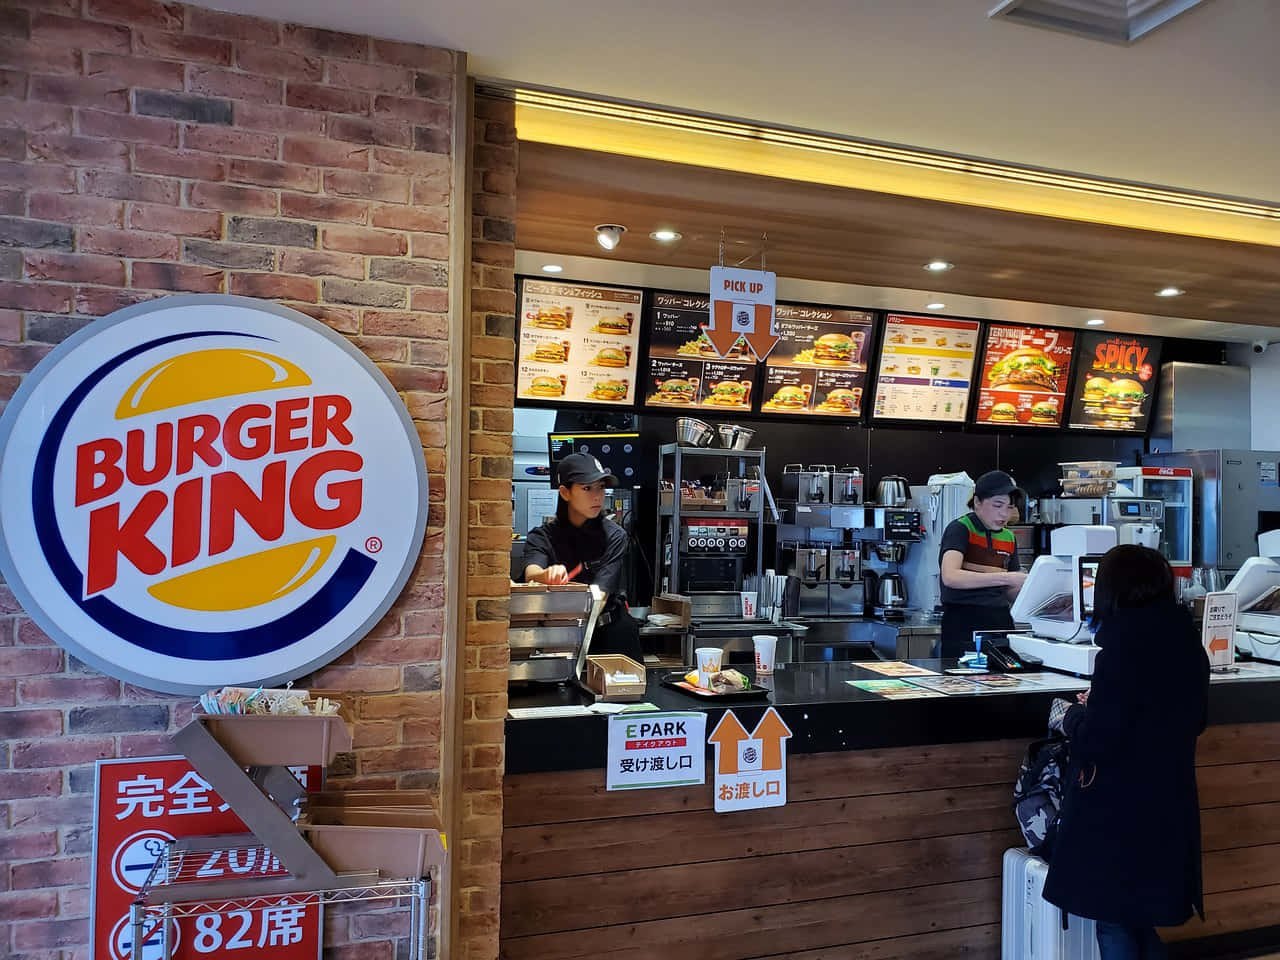 Fådit Begær Opfyldt Med En Saftig Og Lækker Burger King Burger.